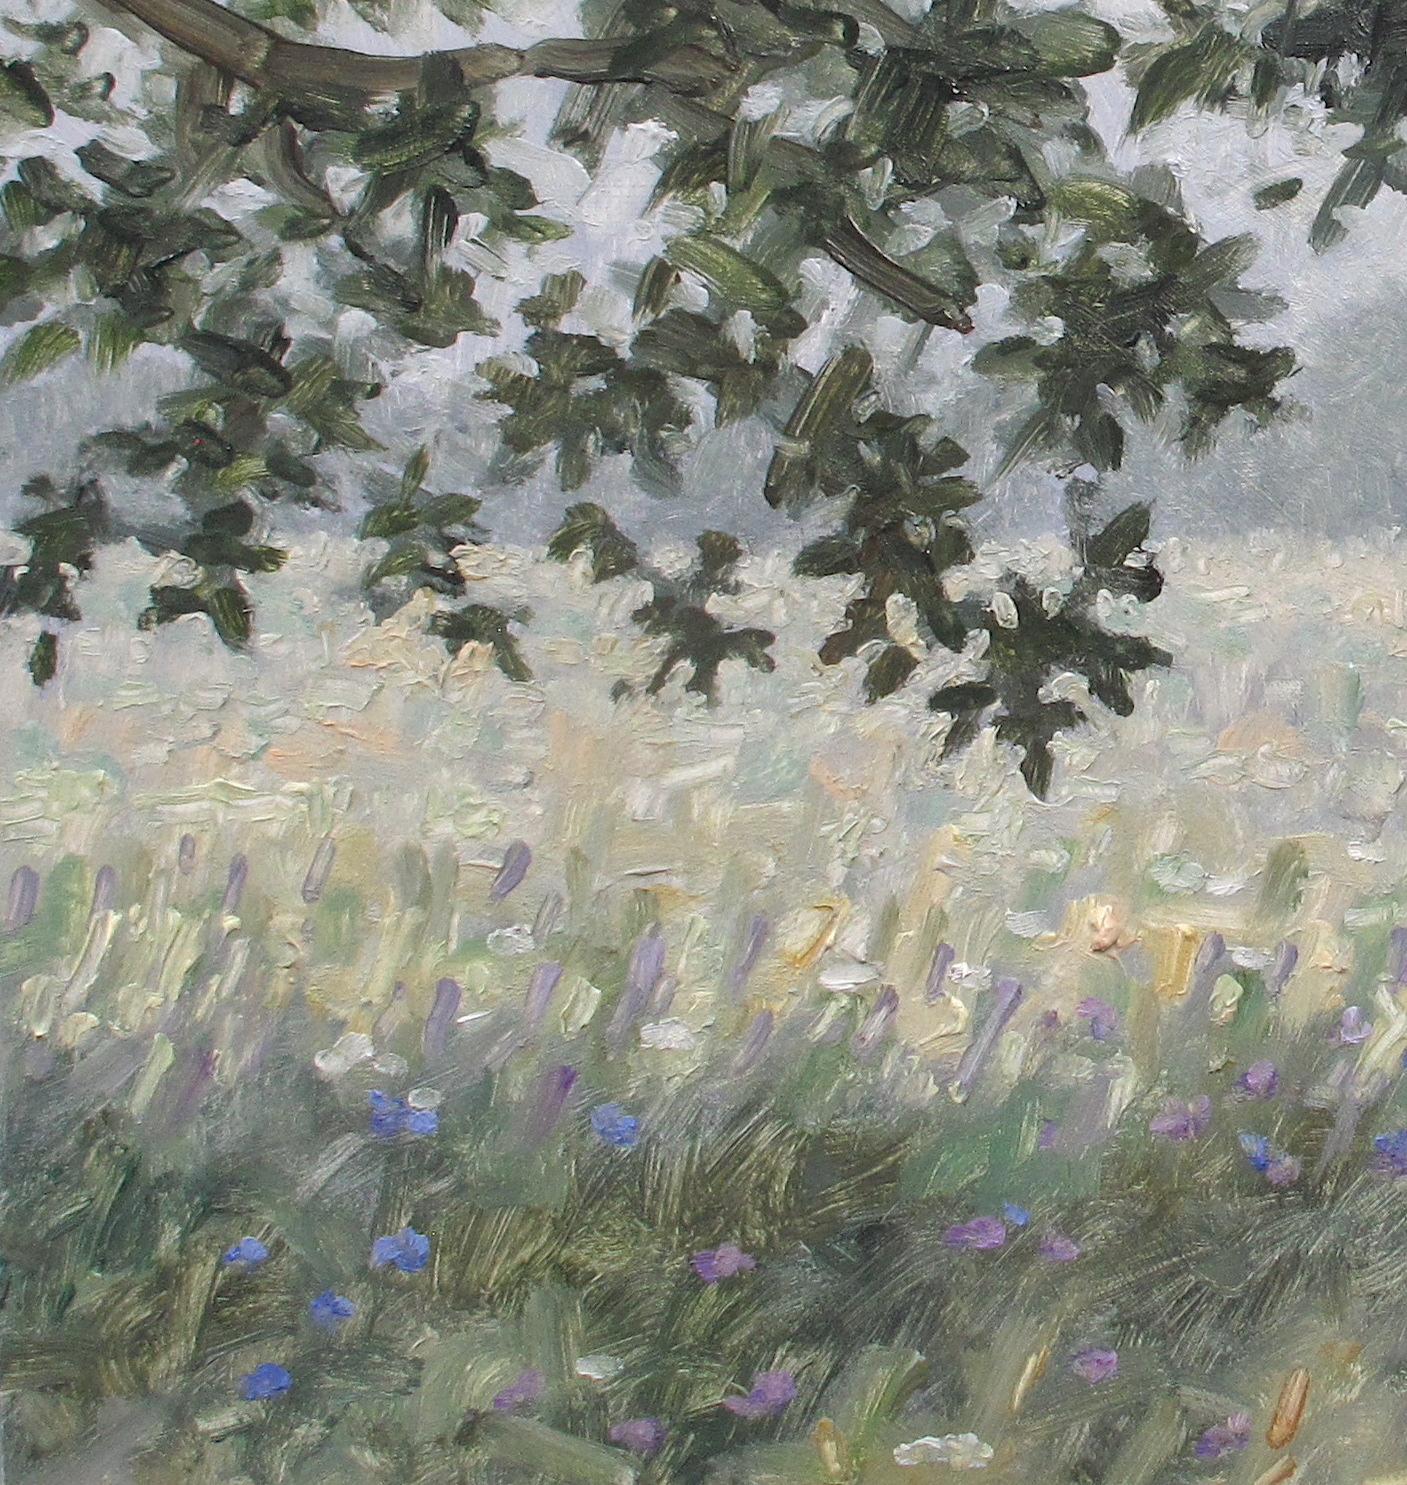 Dieses quadratische Landschaftsgemälde in Öl auf Paneel zeigt eine friedliche Szene im Freien mit einem zart gemalten, in Nebel gehüllten Feld mit weißen und blasslila Blüten unter einem Baum mit olivgrünen Blättern. Es fängt die idyllische Stimmung